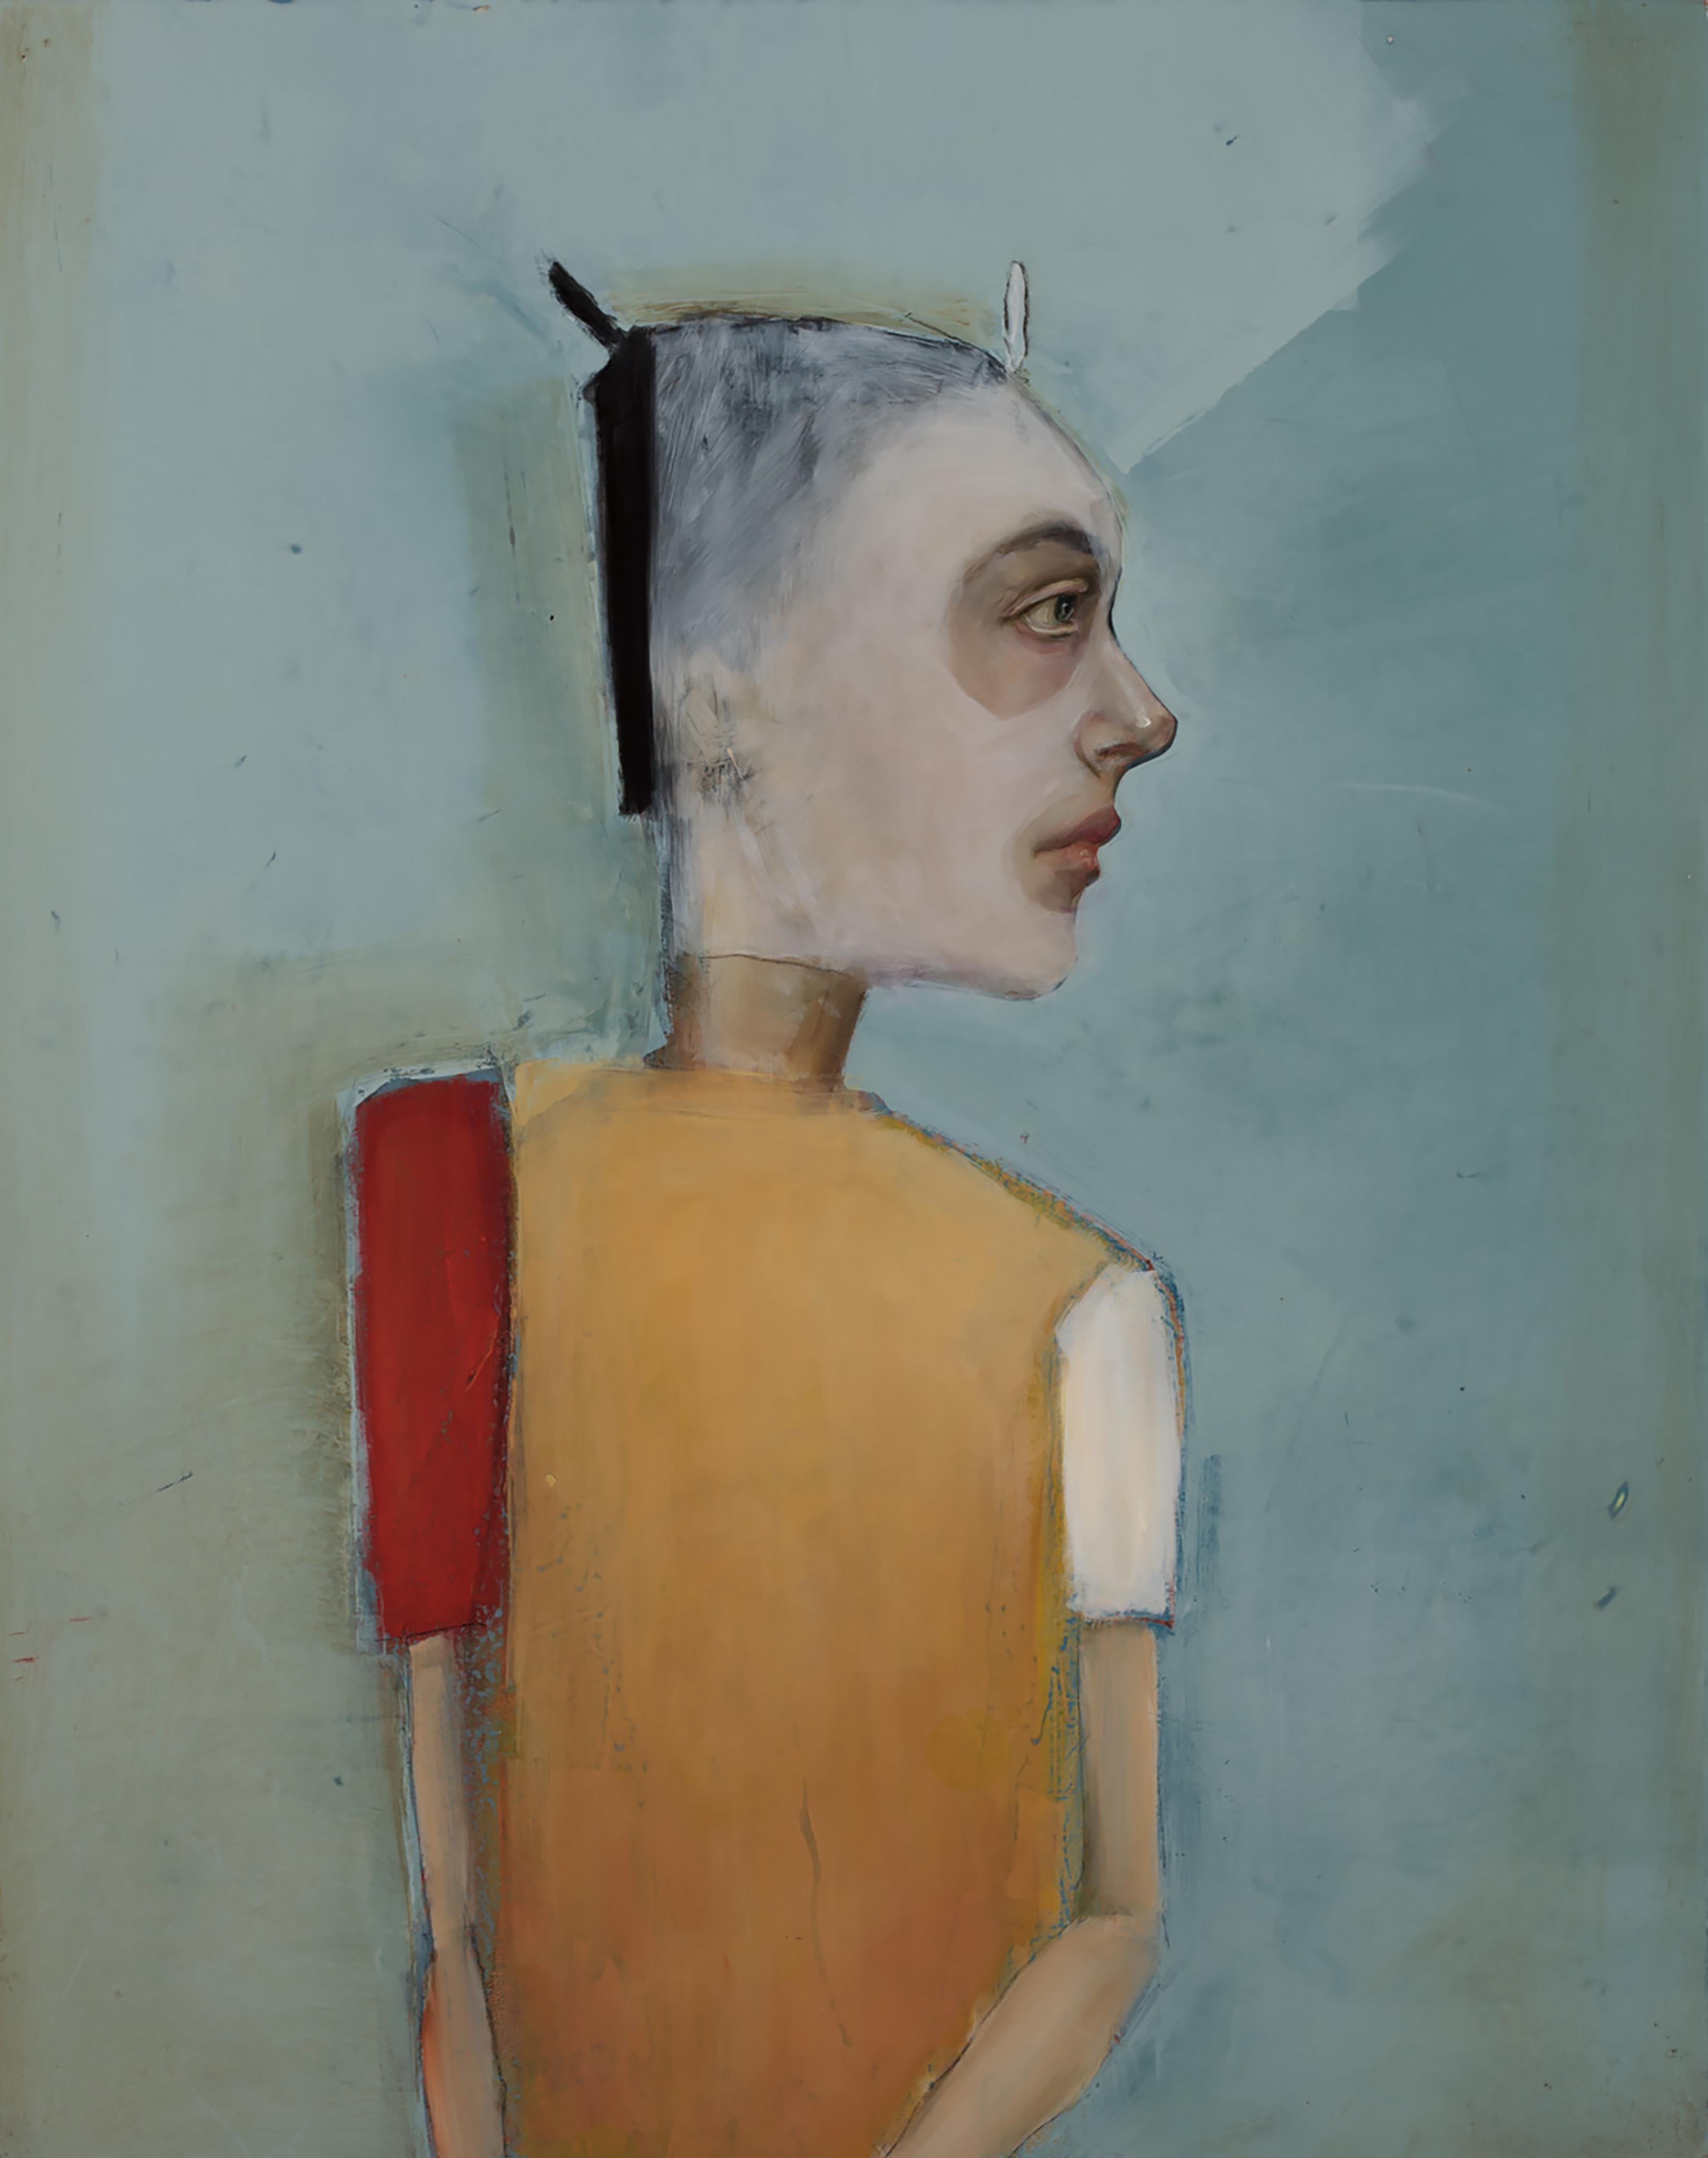 Figurative Painting Michele Mikesell - « La Mascara », huile sur toile, maître portraitiste mystérieux et fantaisiste du pop art